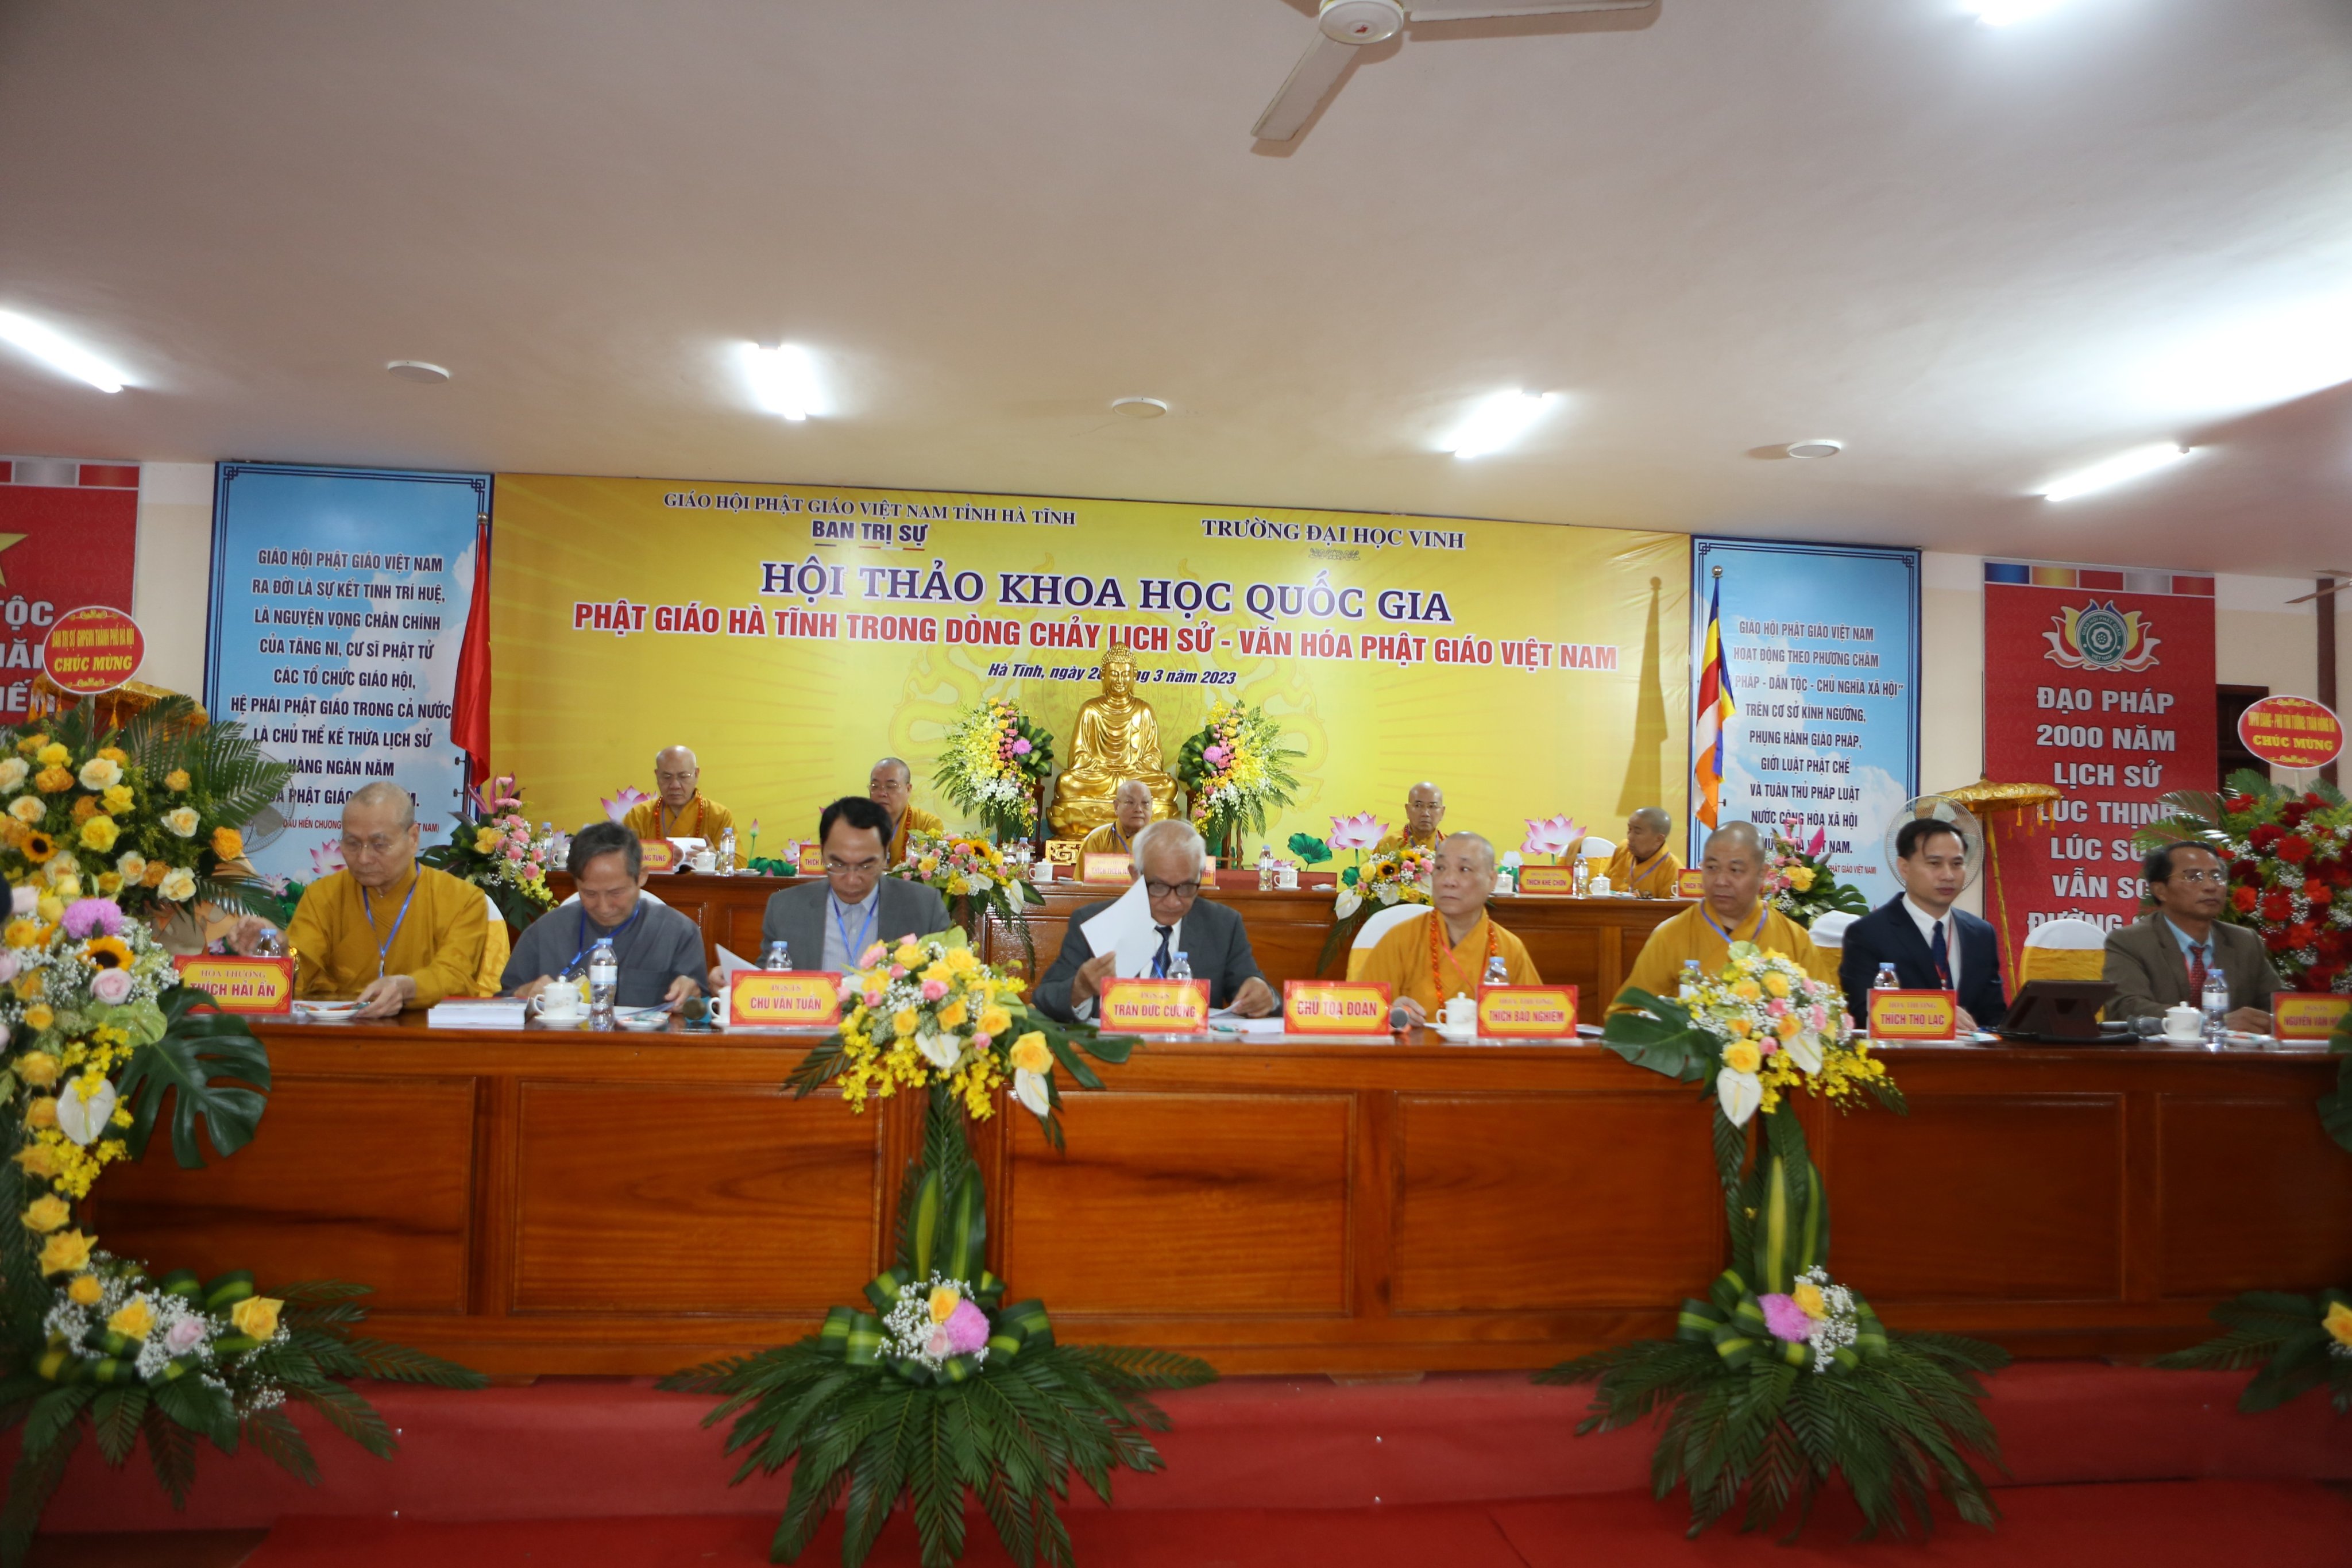 Tổ chức Hội thảo khoa học quốc gia “Phật giáo Hà Tĩnh trong dòng chảy lịch sử - văn hóa Phật giáo Việt Nam”